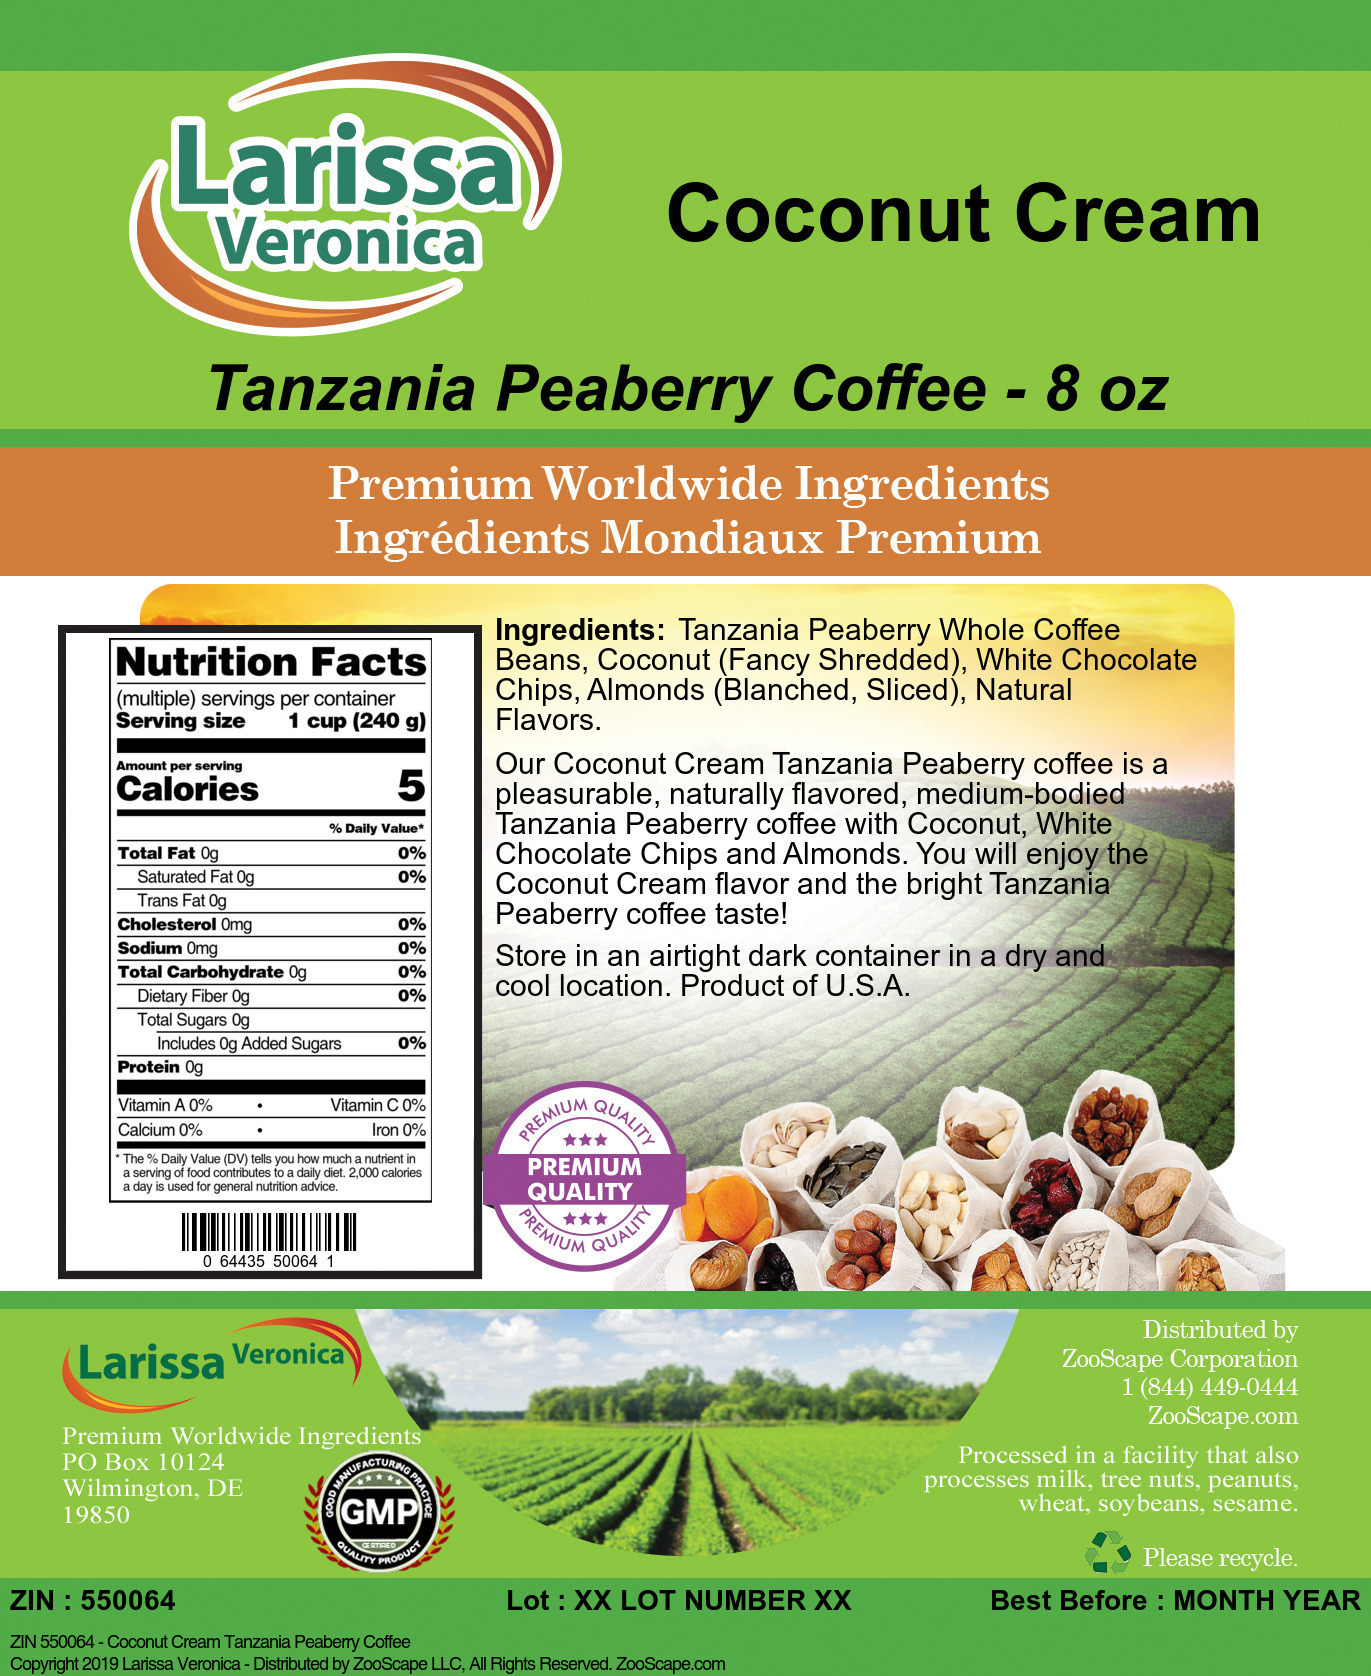 Coconut Cream Tanzania Peaberry Coffee - Label